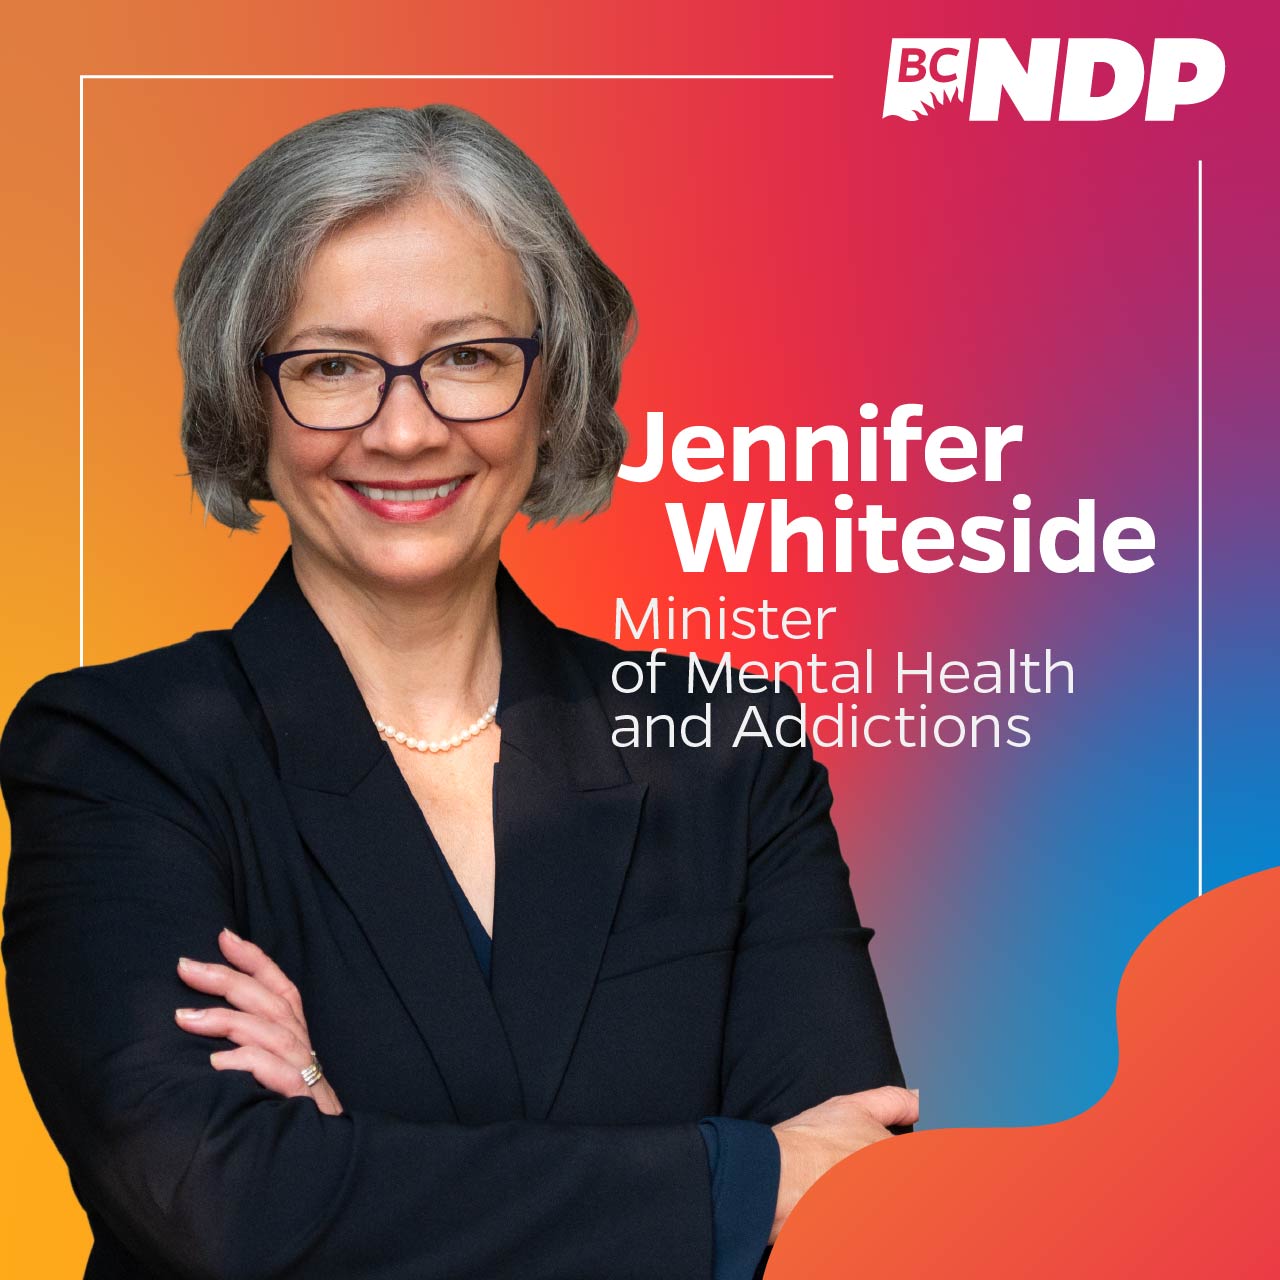 Jennifer Whiteside